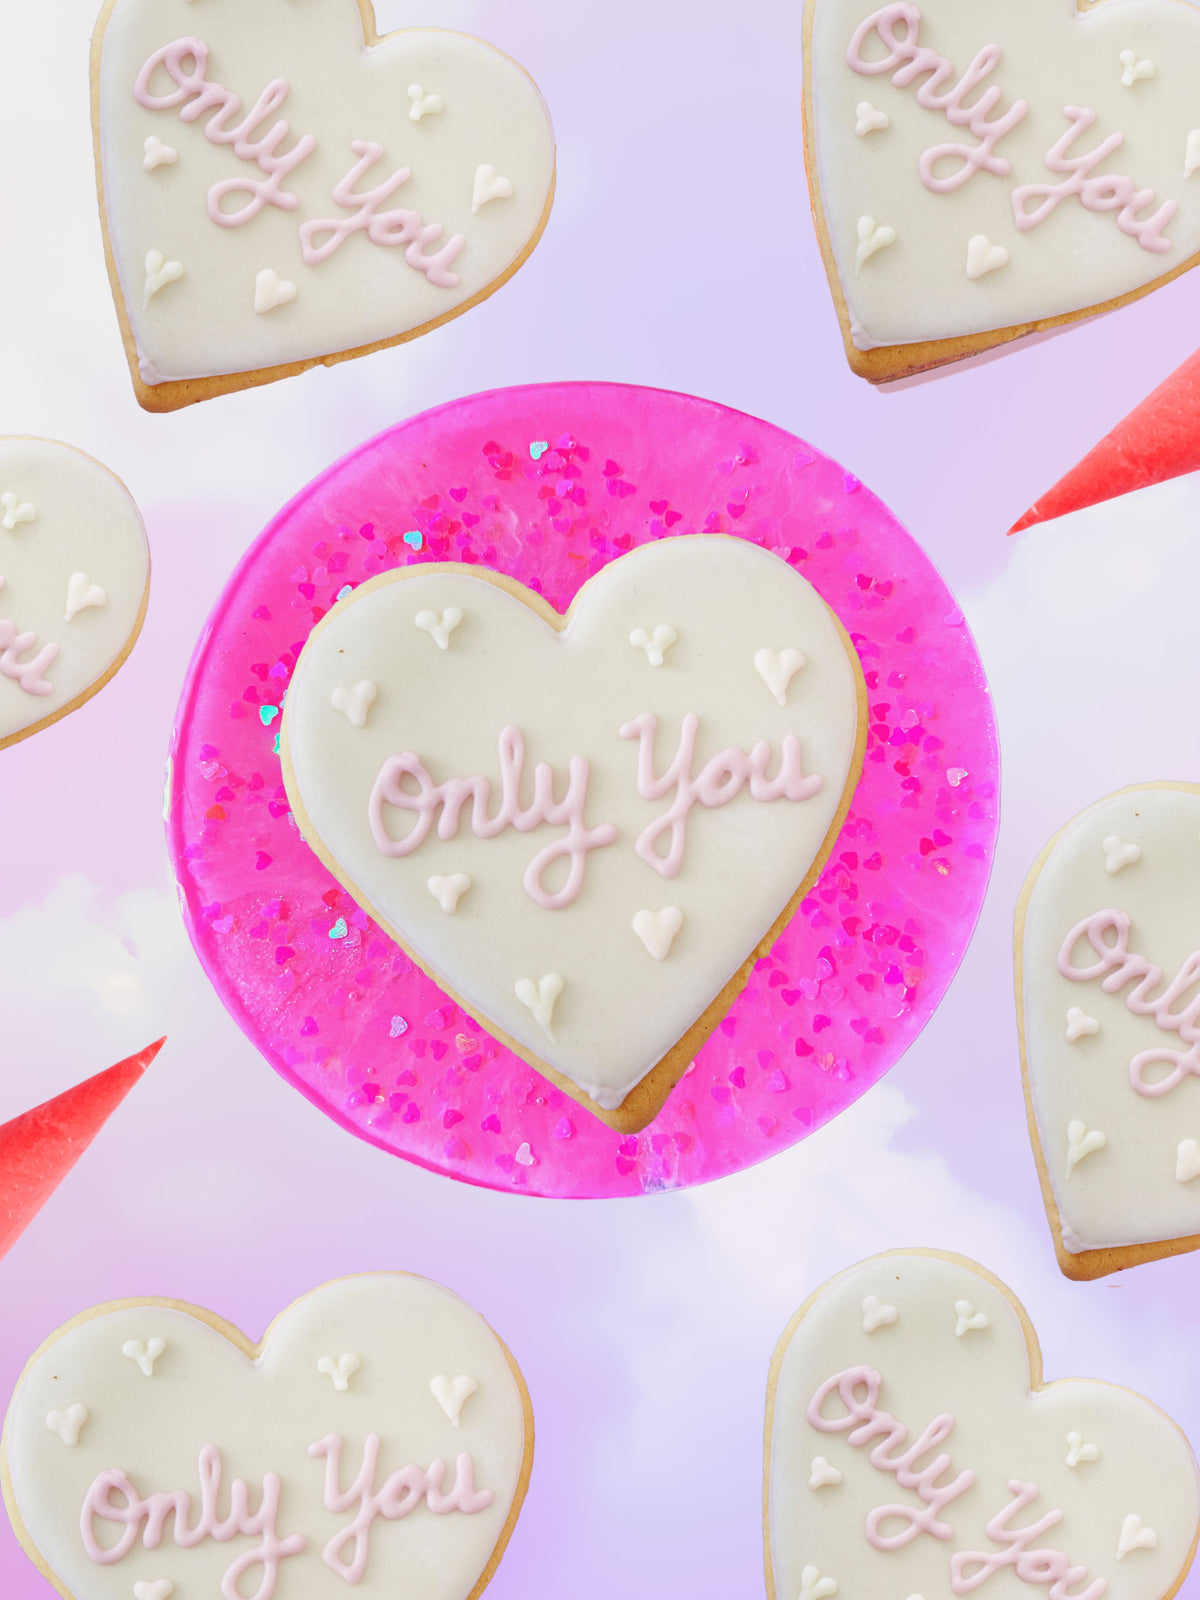 Sweetest Tiers Cookie Turntable – Sugar Love Designs